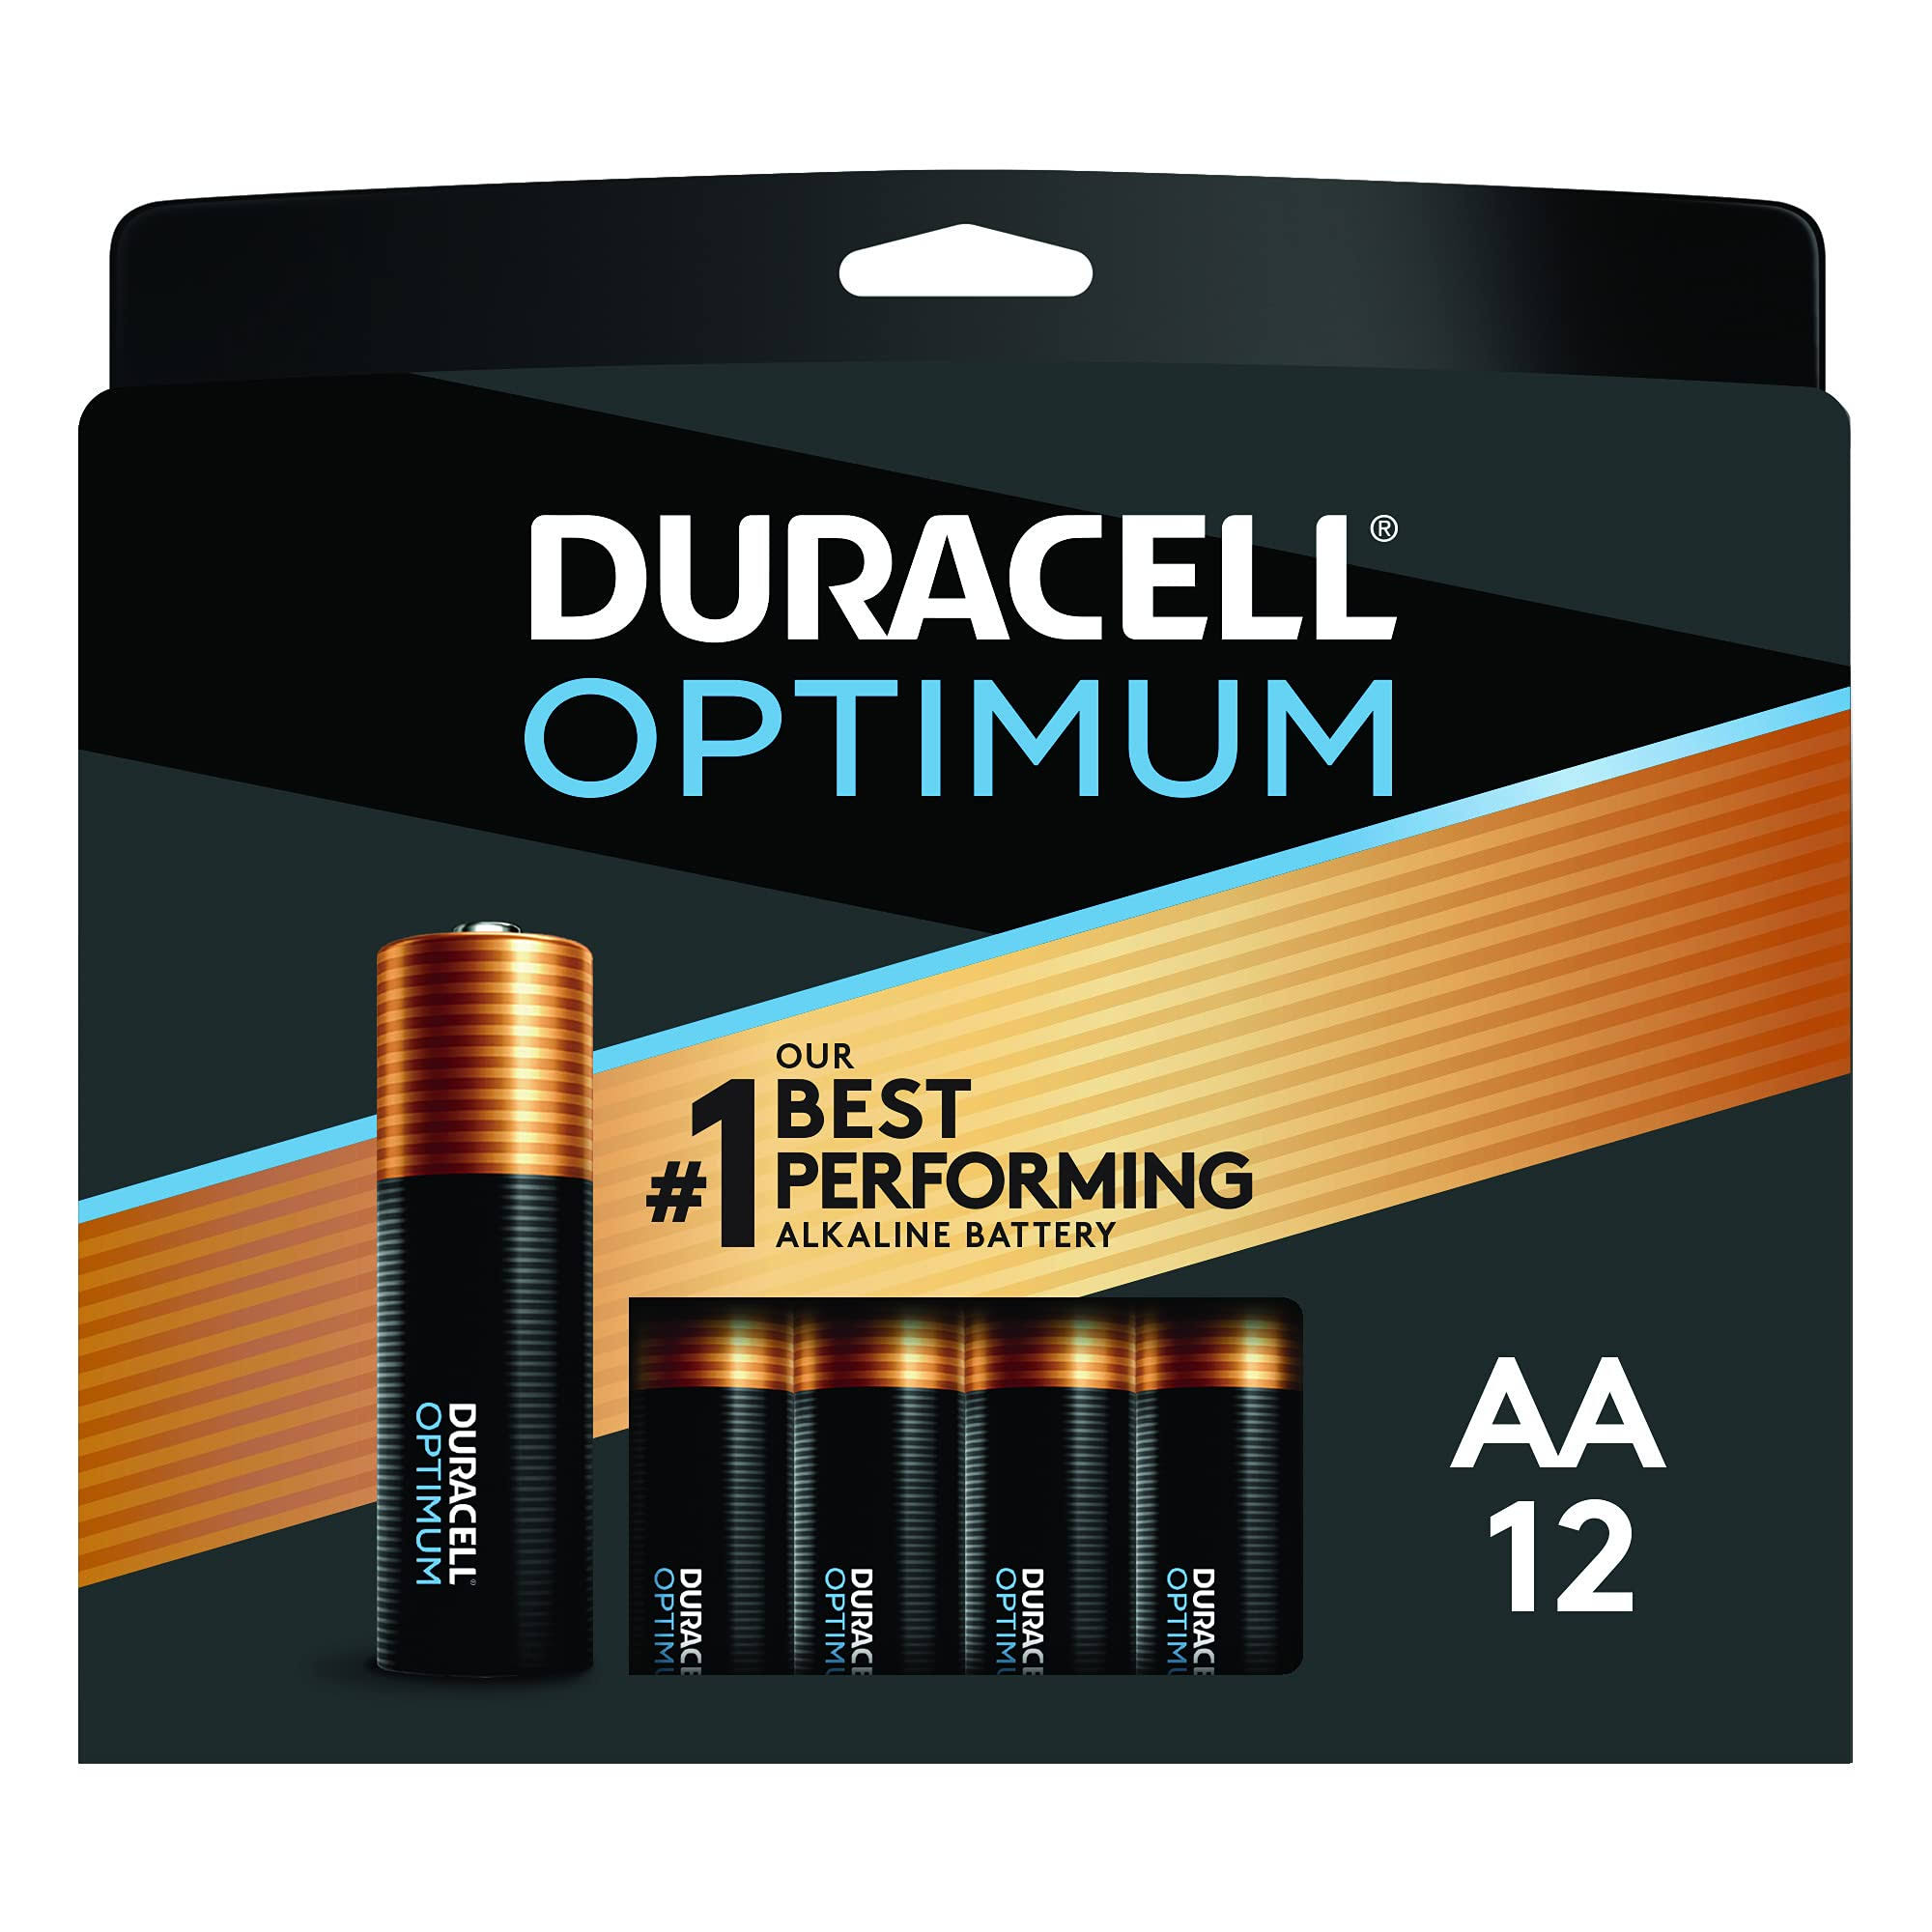 Duracell Optimum AA Alkaline Battery - 12 pack